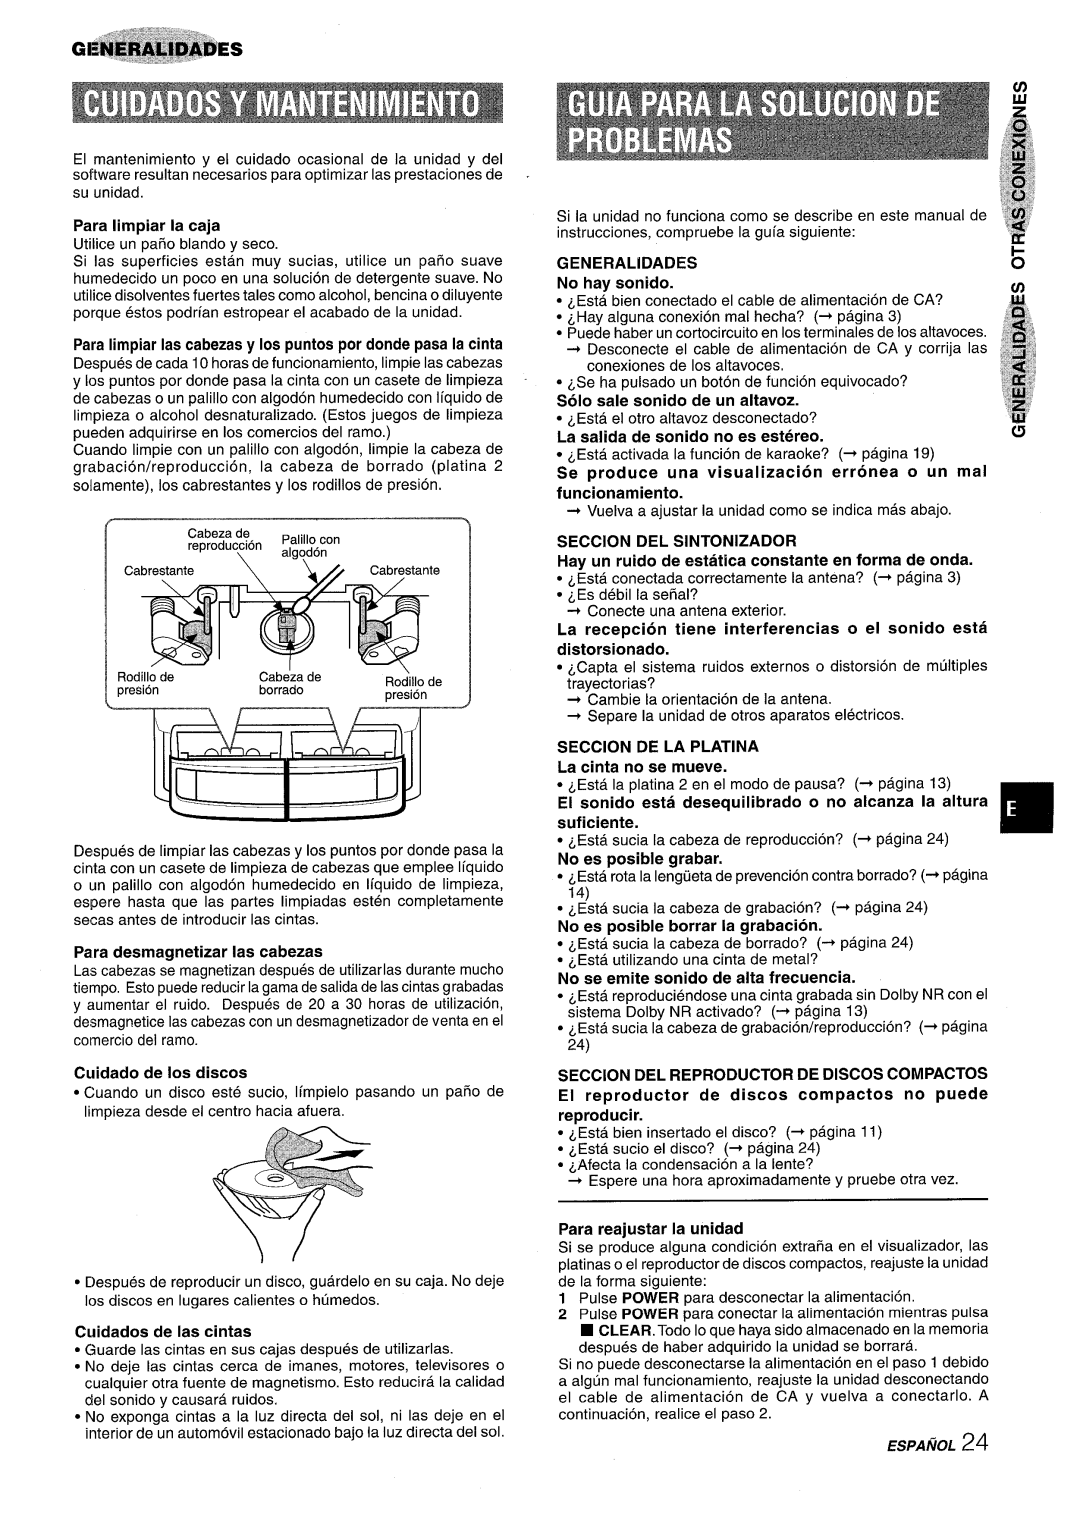 Sony NSX-A959 Para Iimpiar la caja, Para Iimpiar Ias cabezas y Ios puntos por donde pasa la cinta, Cuidado de Ios discos 